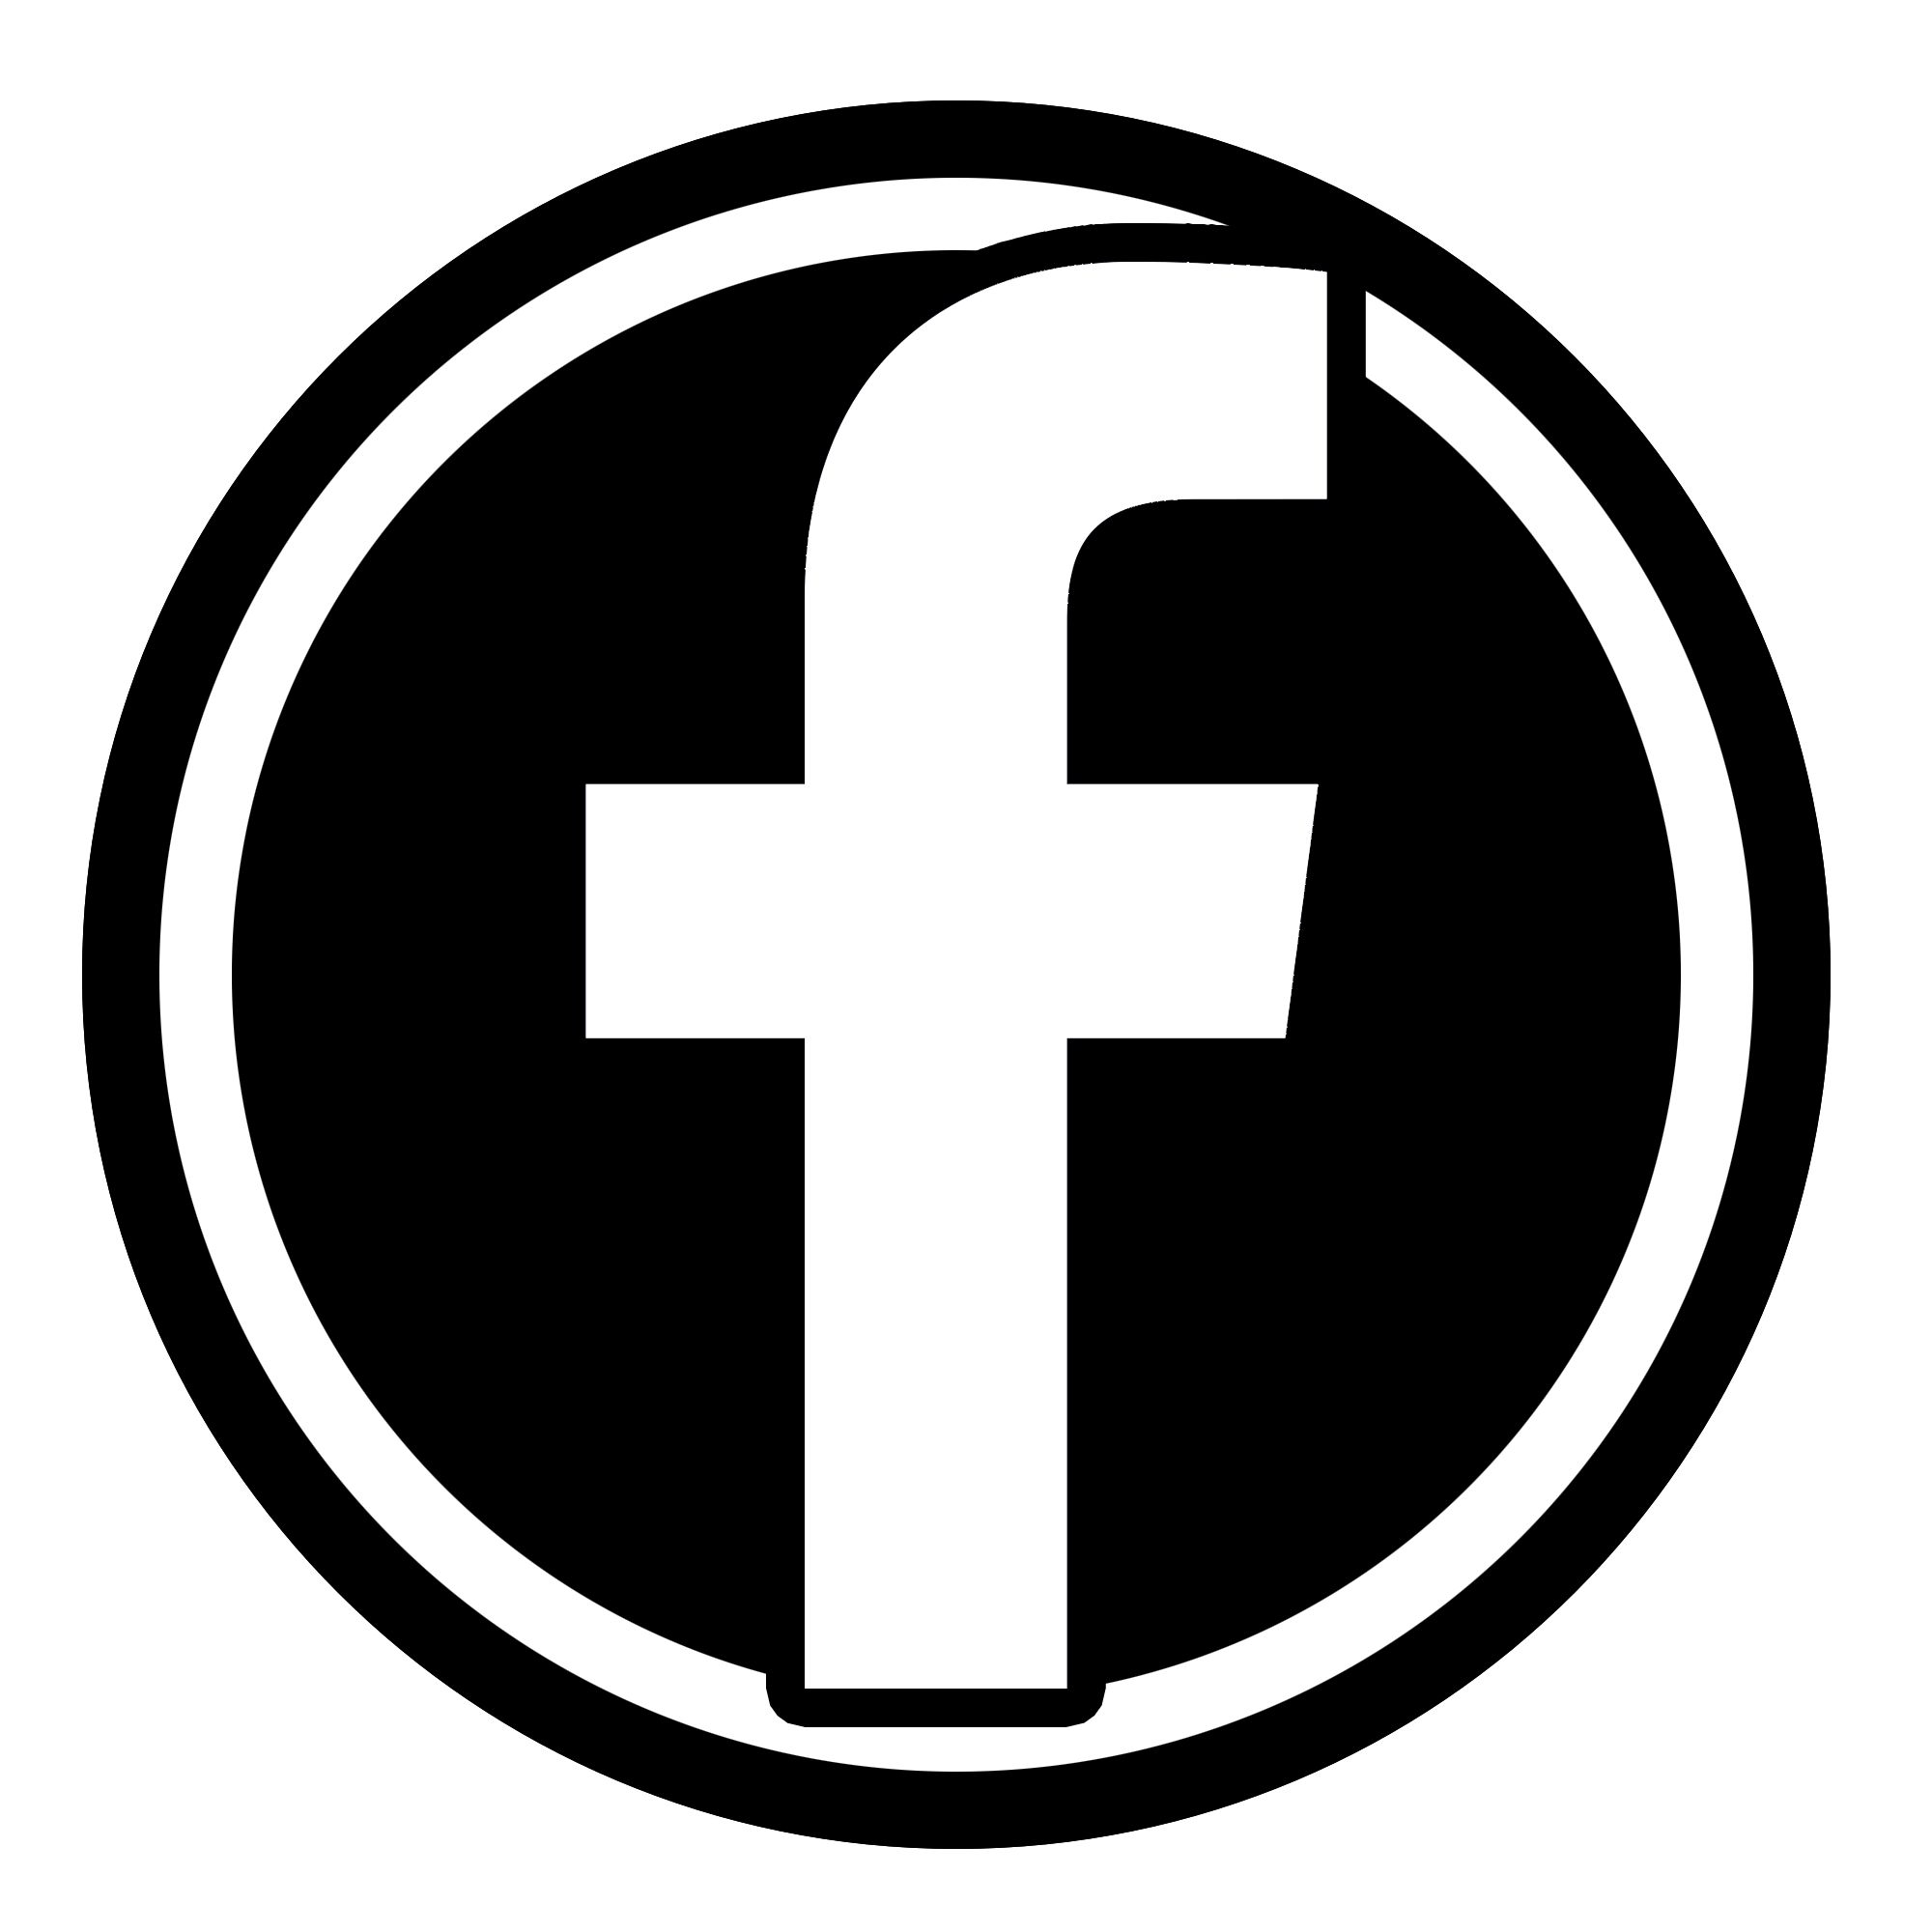 logo fb hitam putih